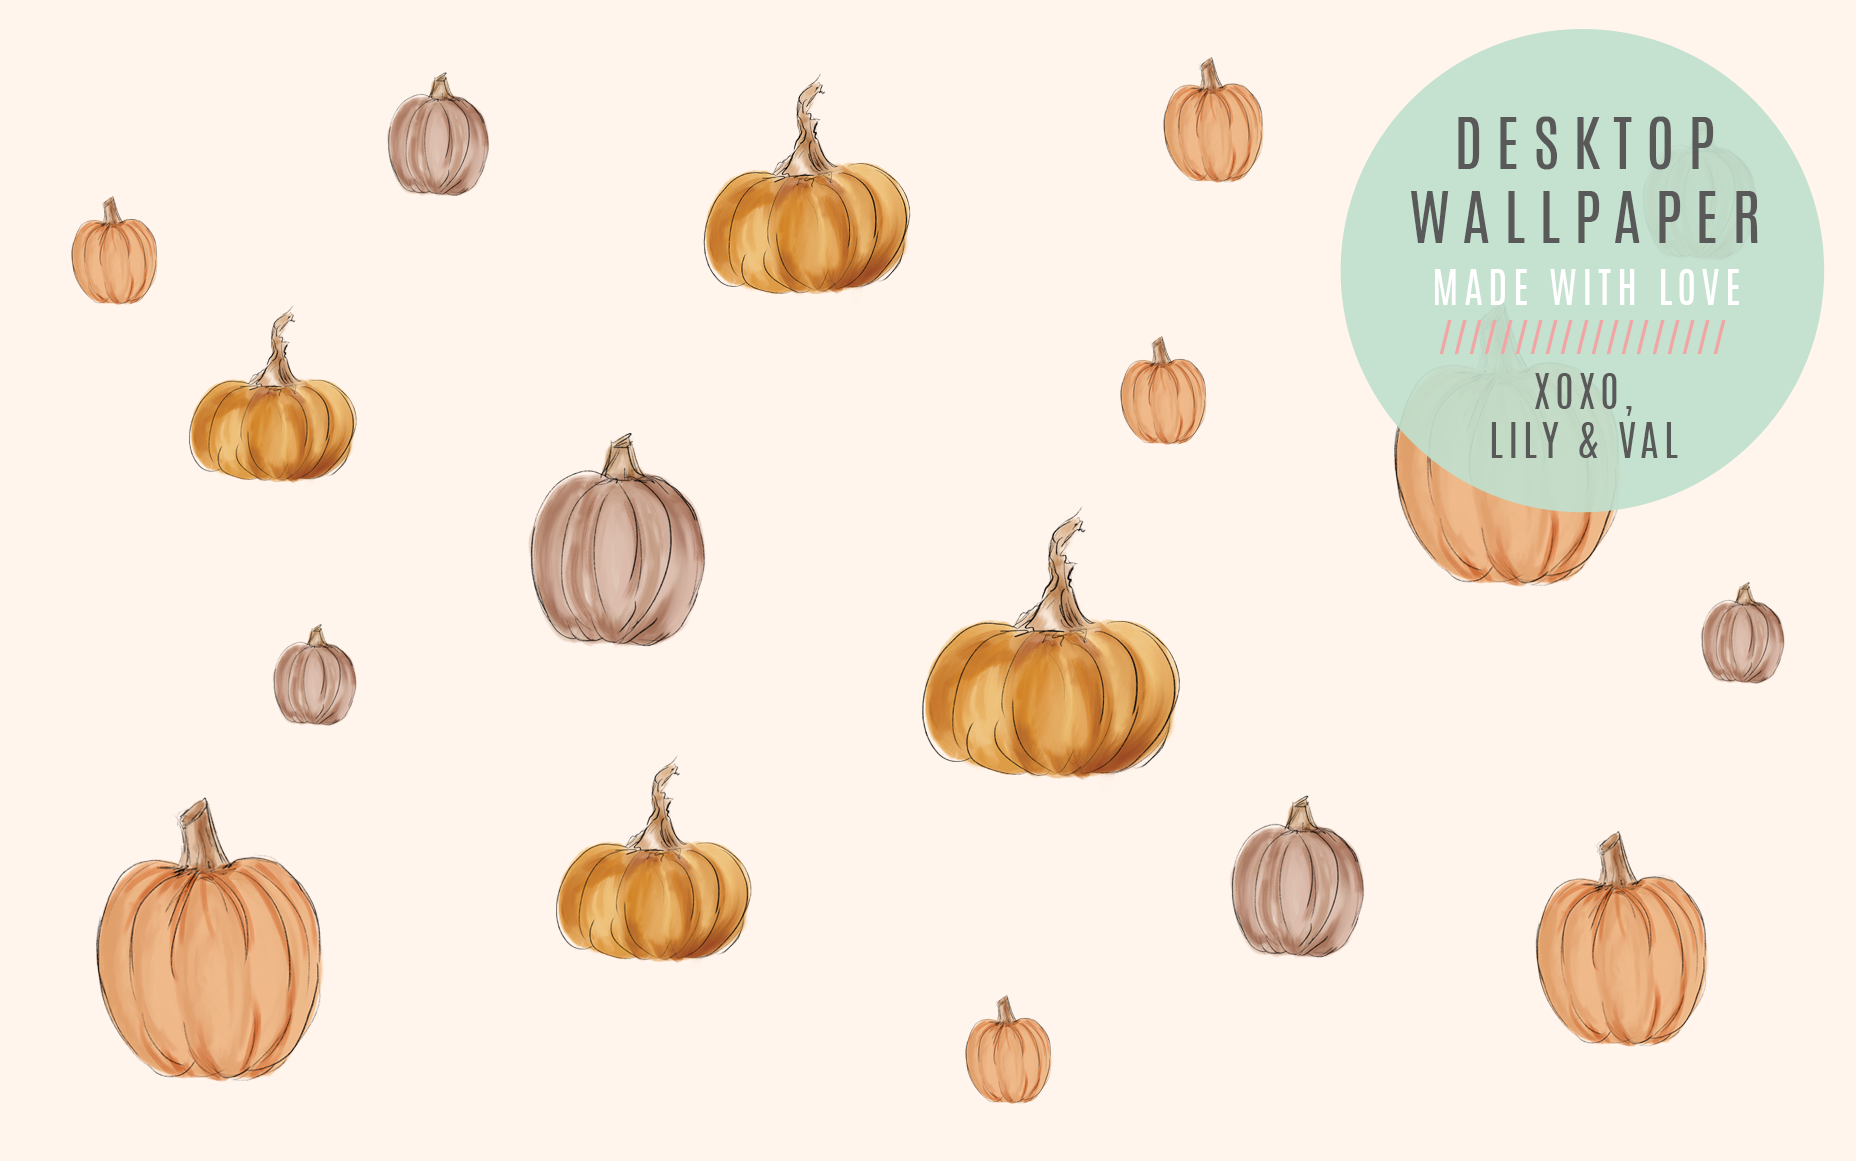 Cute hand-drawn pumpkin desktop computer background for Fall/Autumn